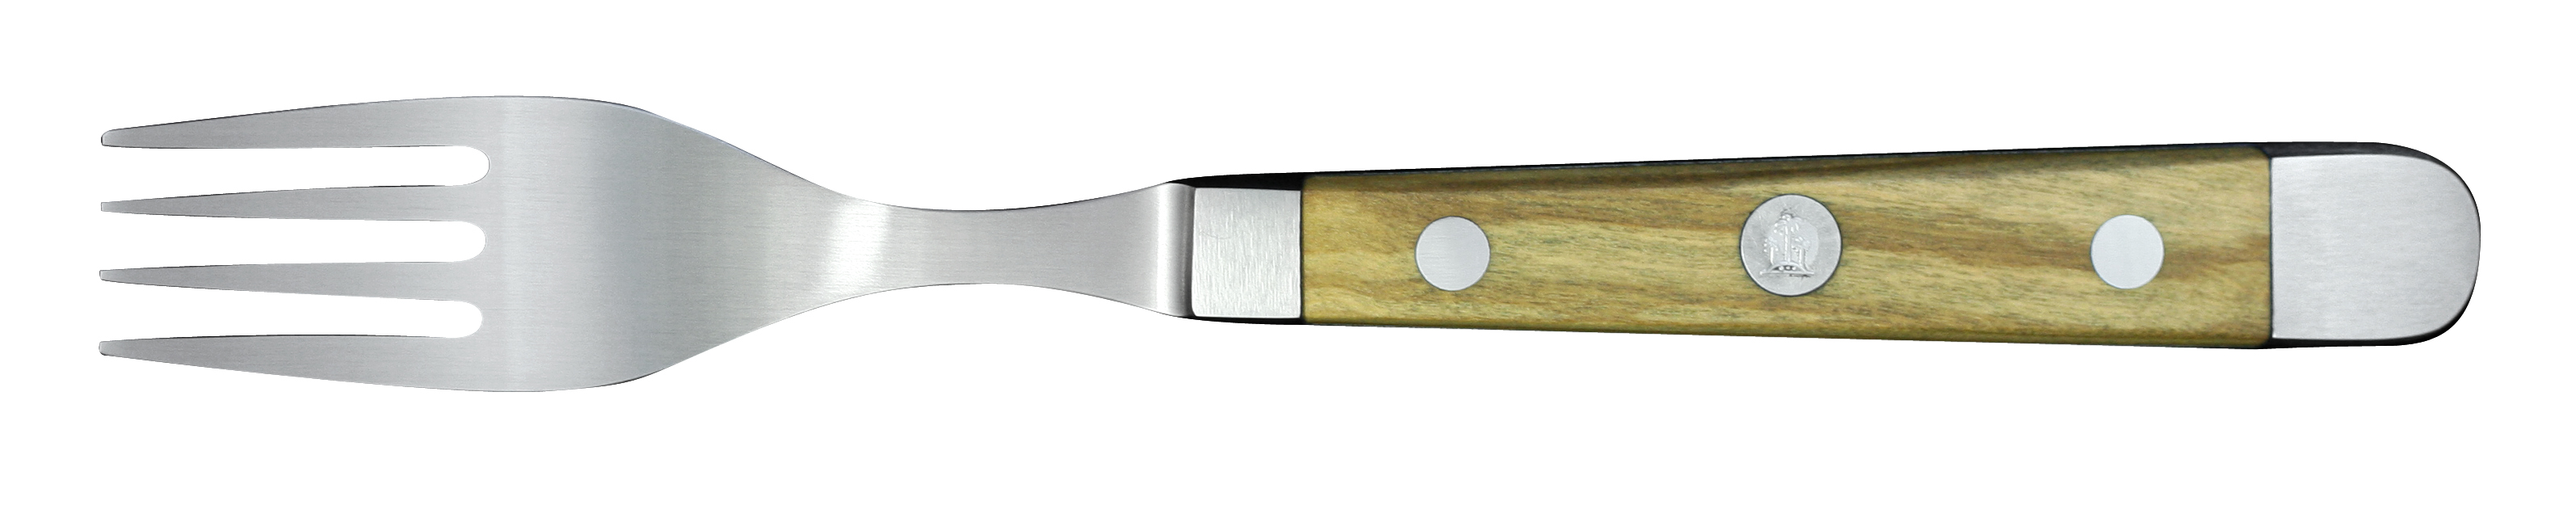 Güde Alpha Olive Tafelgabel 12 cm / CVM-Messerstahl mit Griffschalen aus Olivenholz